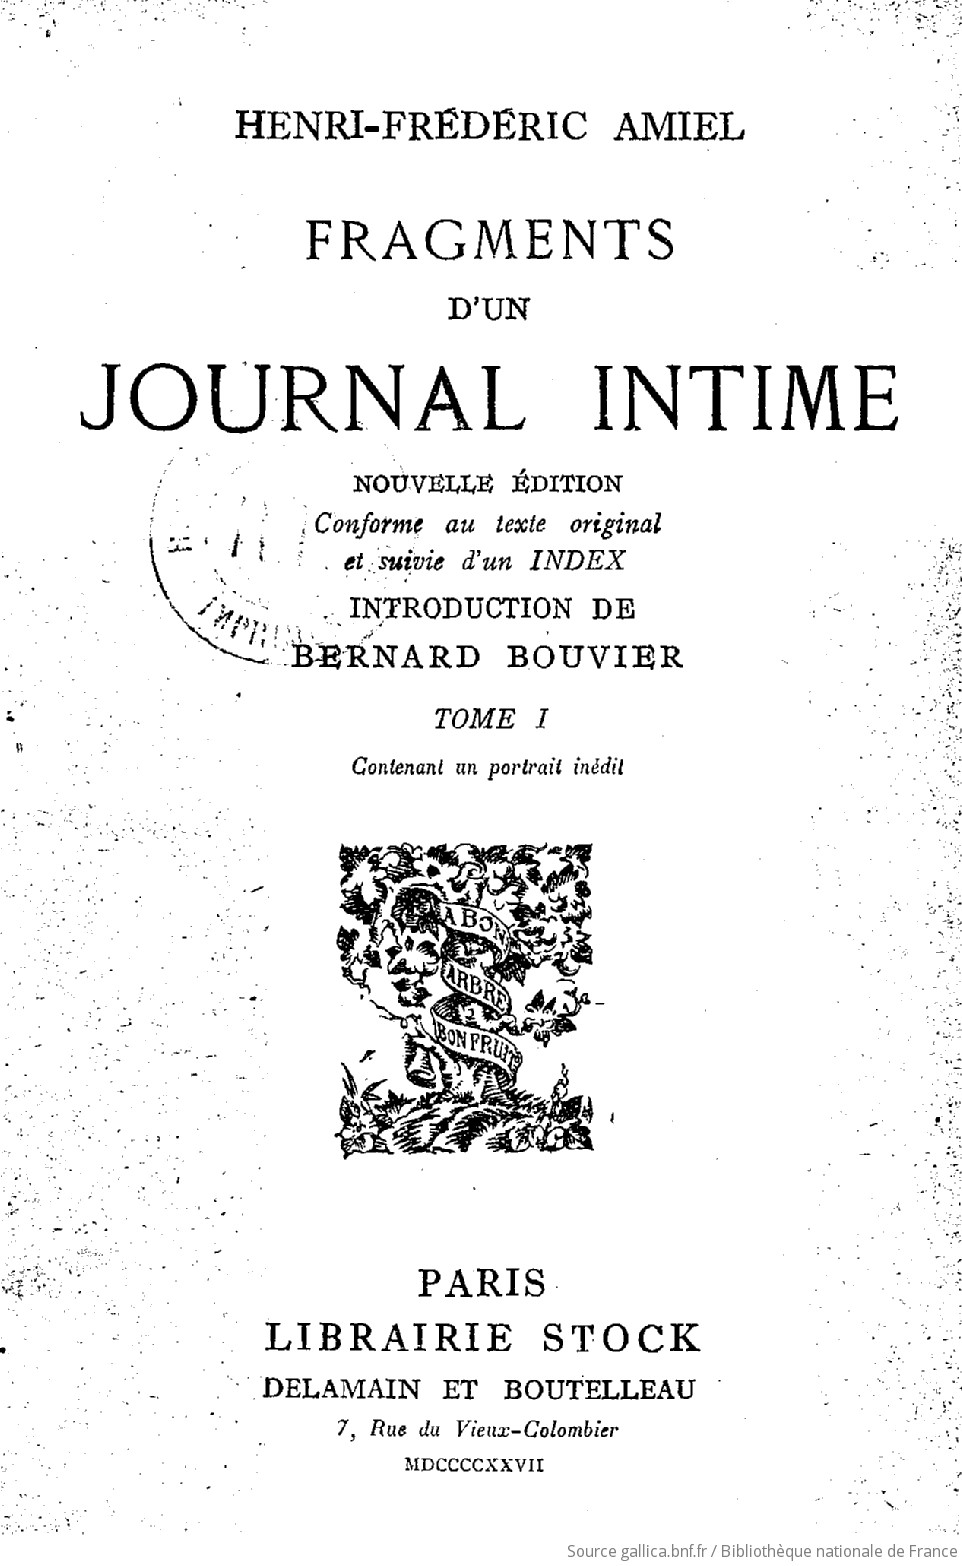 Journal intime / Journal numérique en français -  France